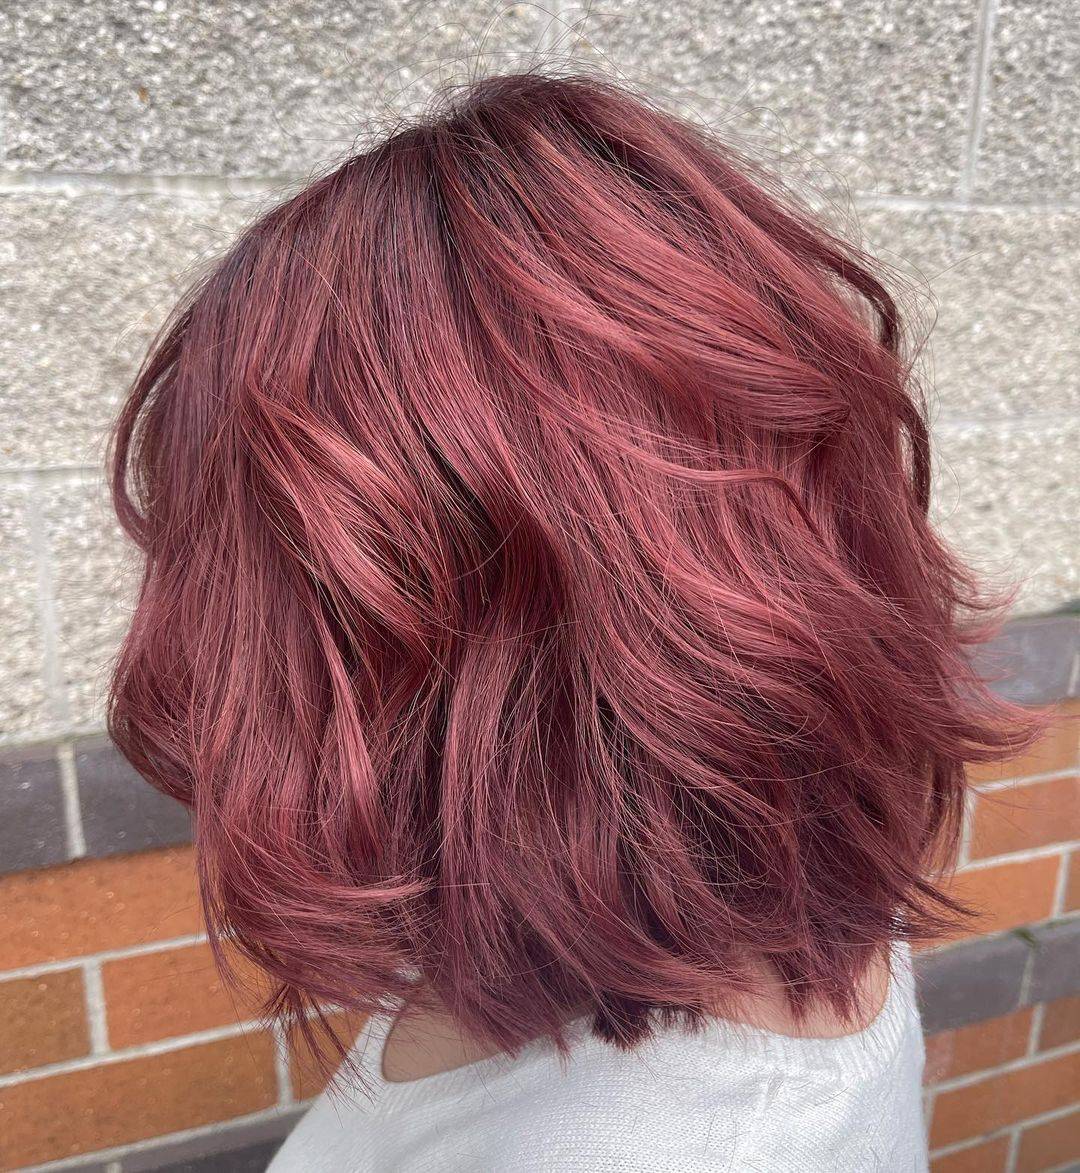 Burgundy hair color 418 burgundy hair color | burgundy hair color for women | burgundy hair color highlights Burgundy Hair Color